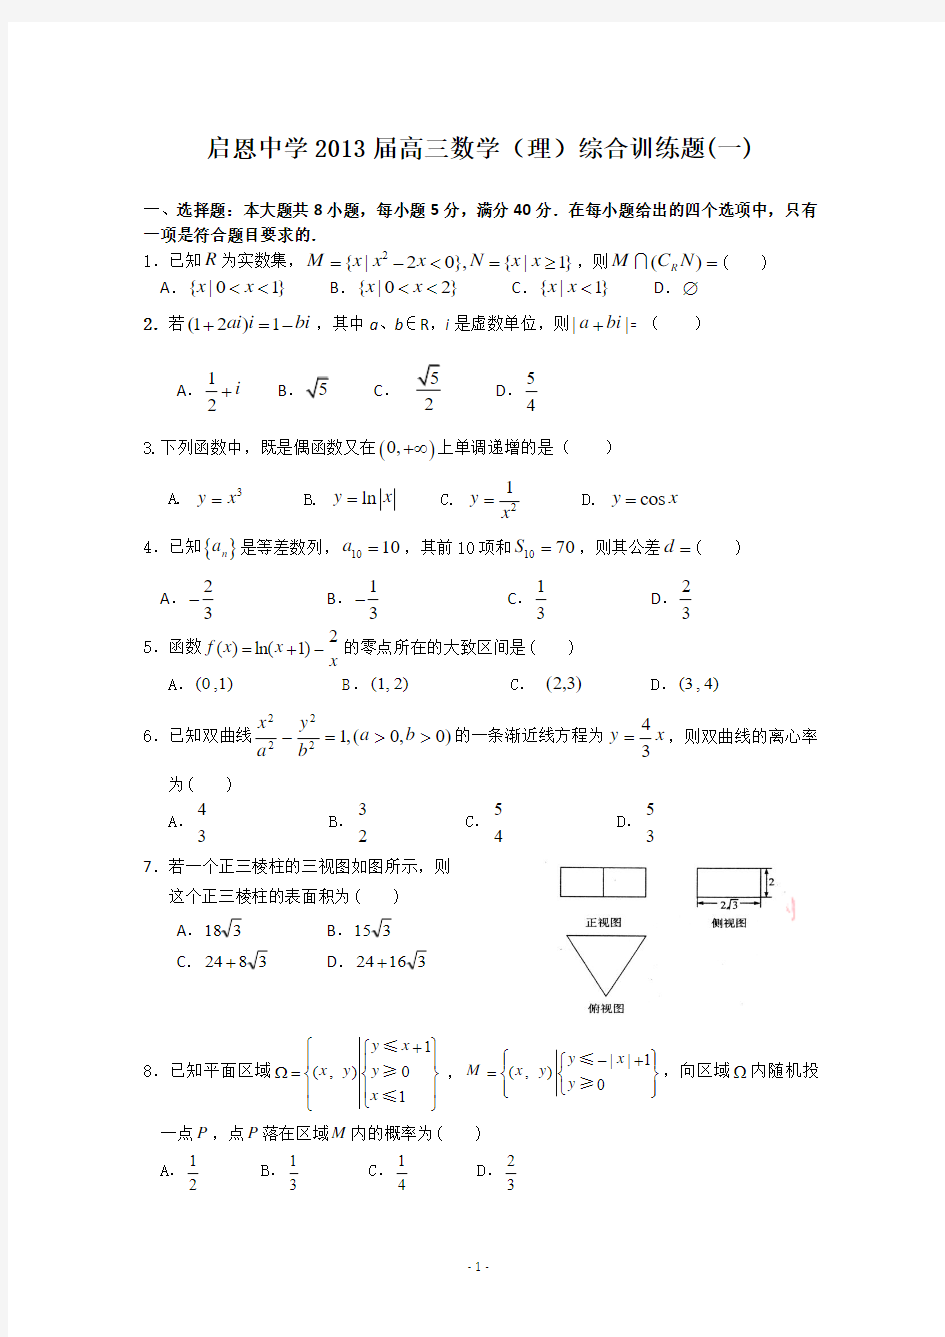 启恩中学2013届高三数学(理)综合训练题(一)